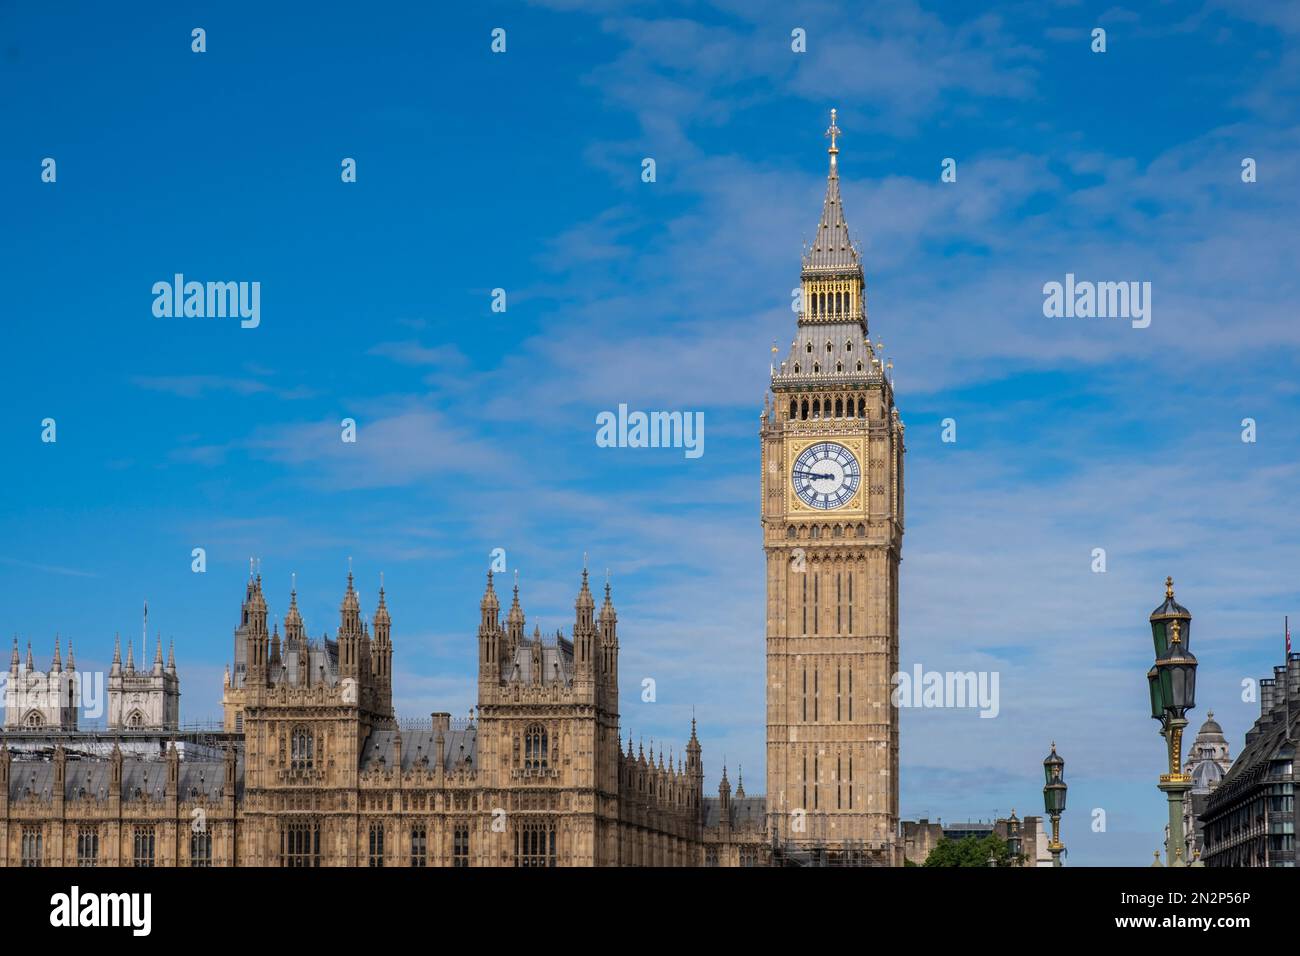 Chambres du Parlement (Palais de Westminster) et tour d'horloge de Big Ben. Rivière Thames. Parlement du 19th siècle par Charles Barry et Augustus Pugin. Banque D'Images